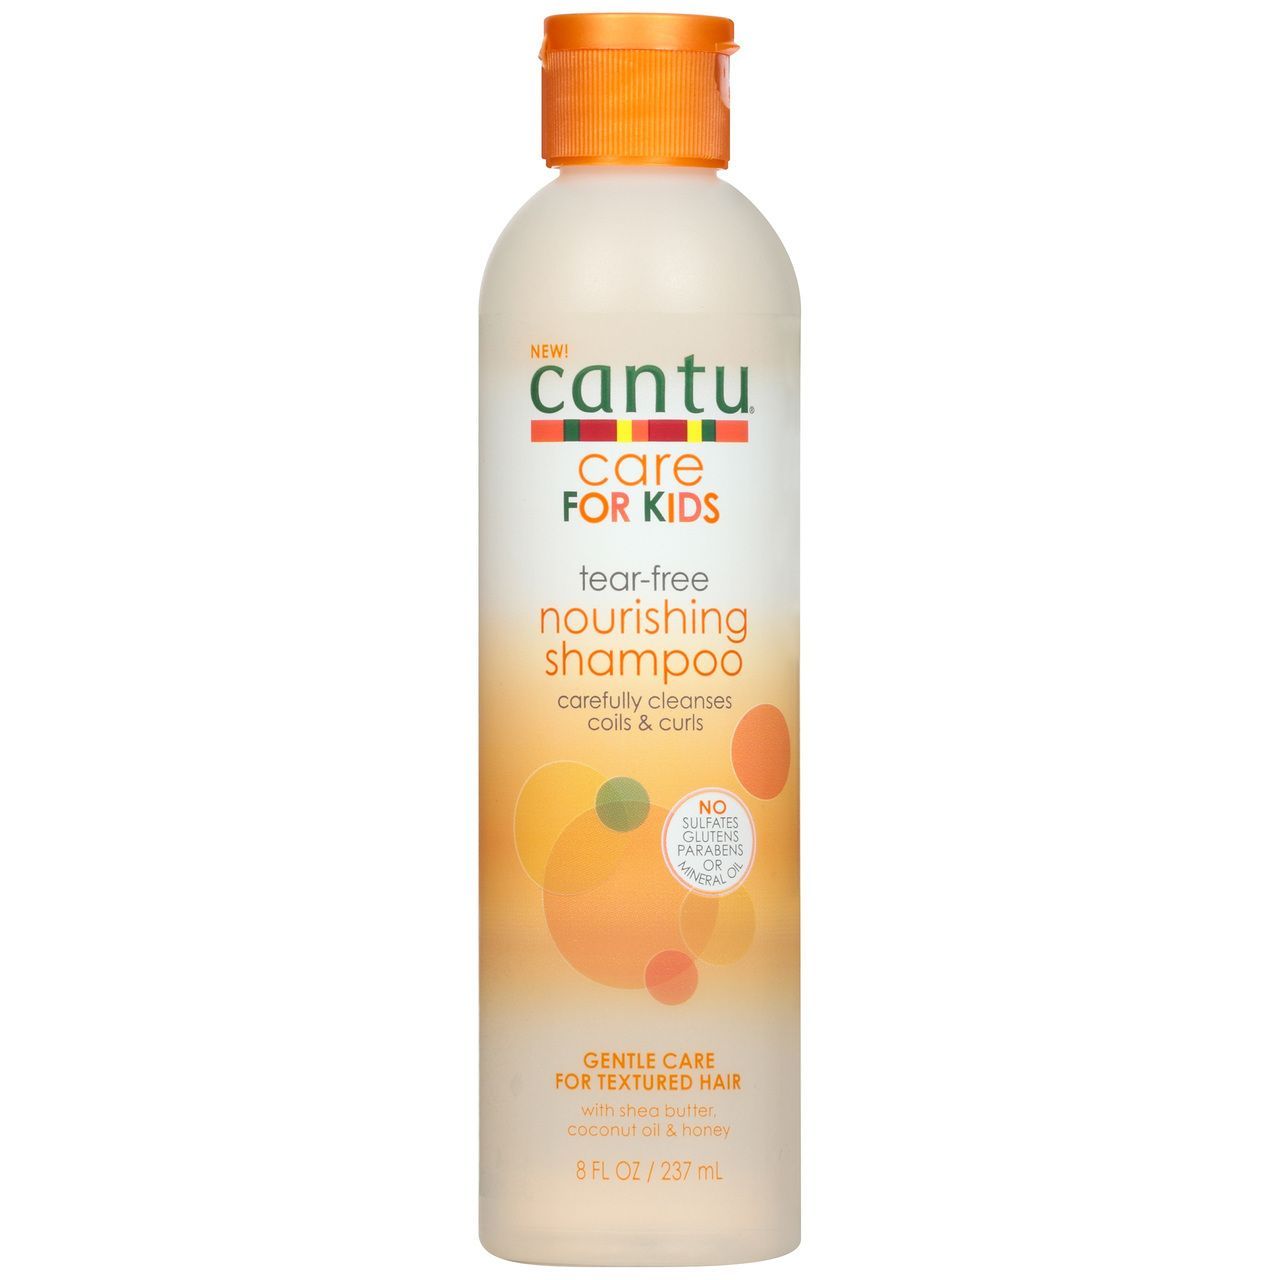 Cantu Care for Kids Tear-Free Nourishing Shampoo - 237ml